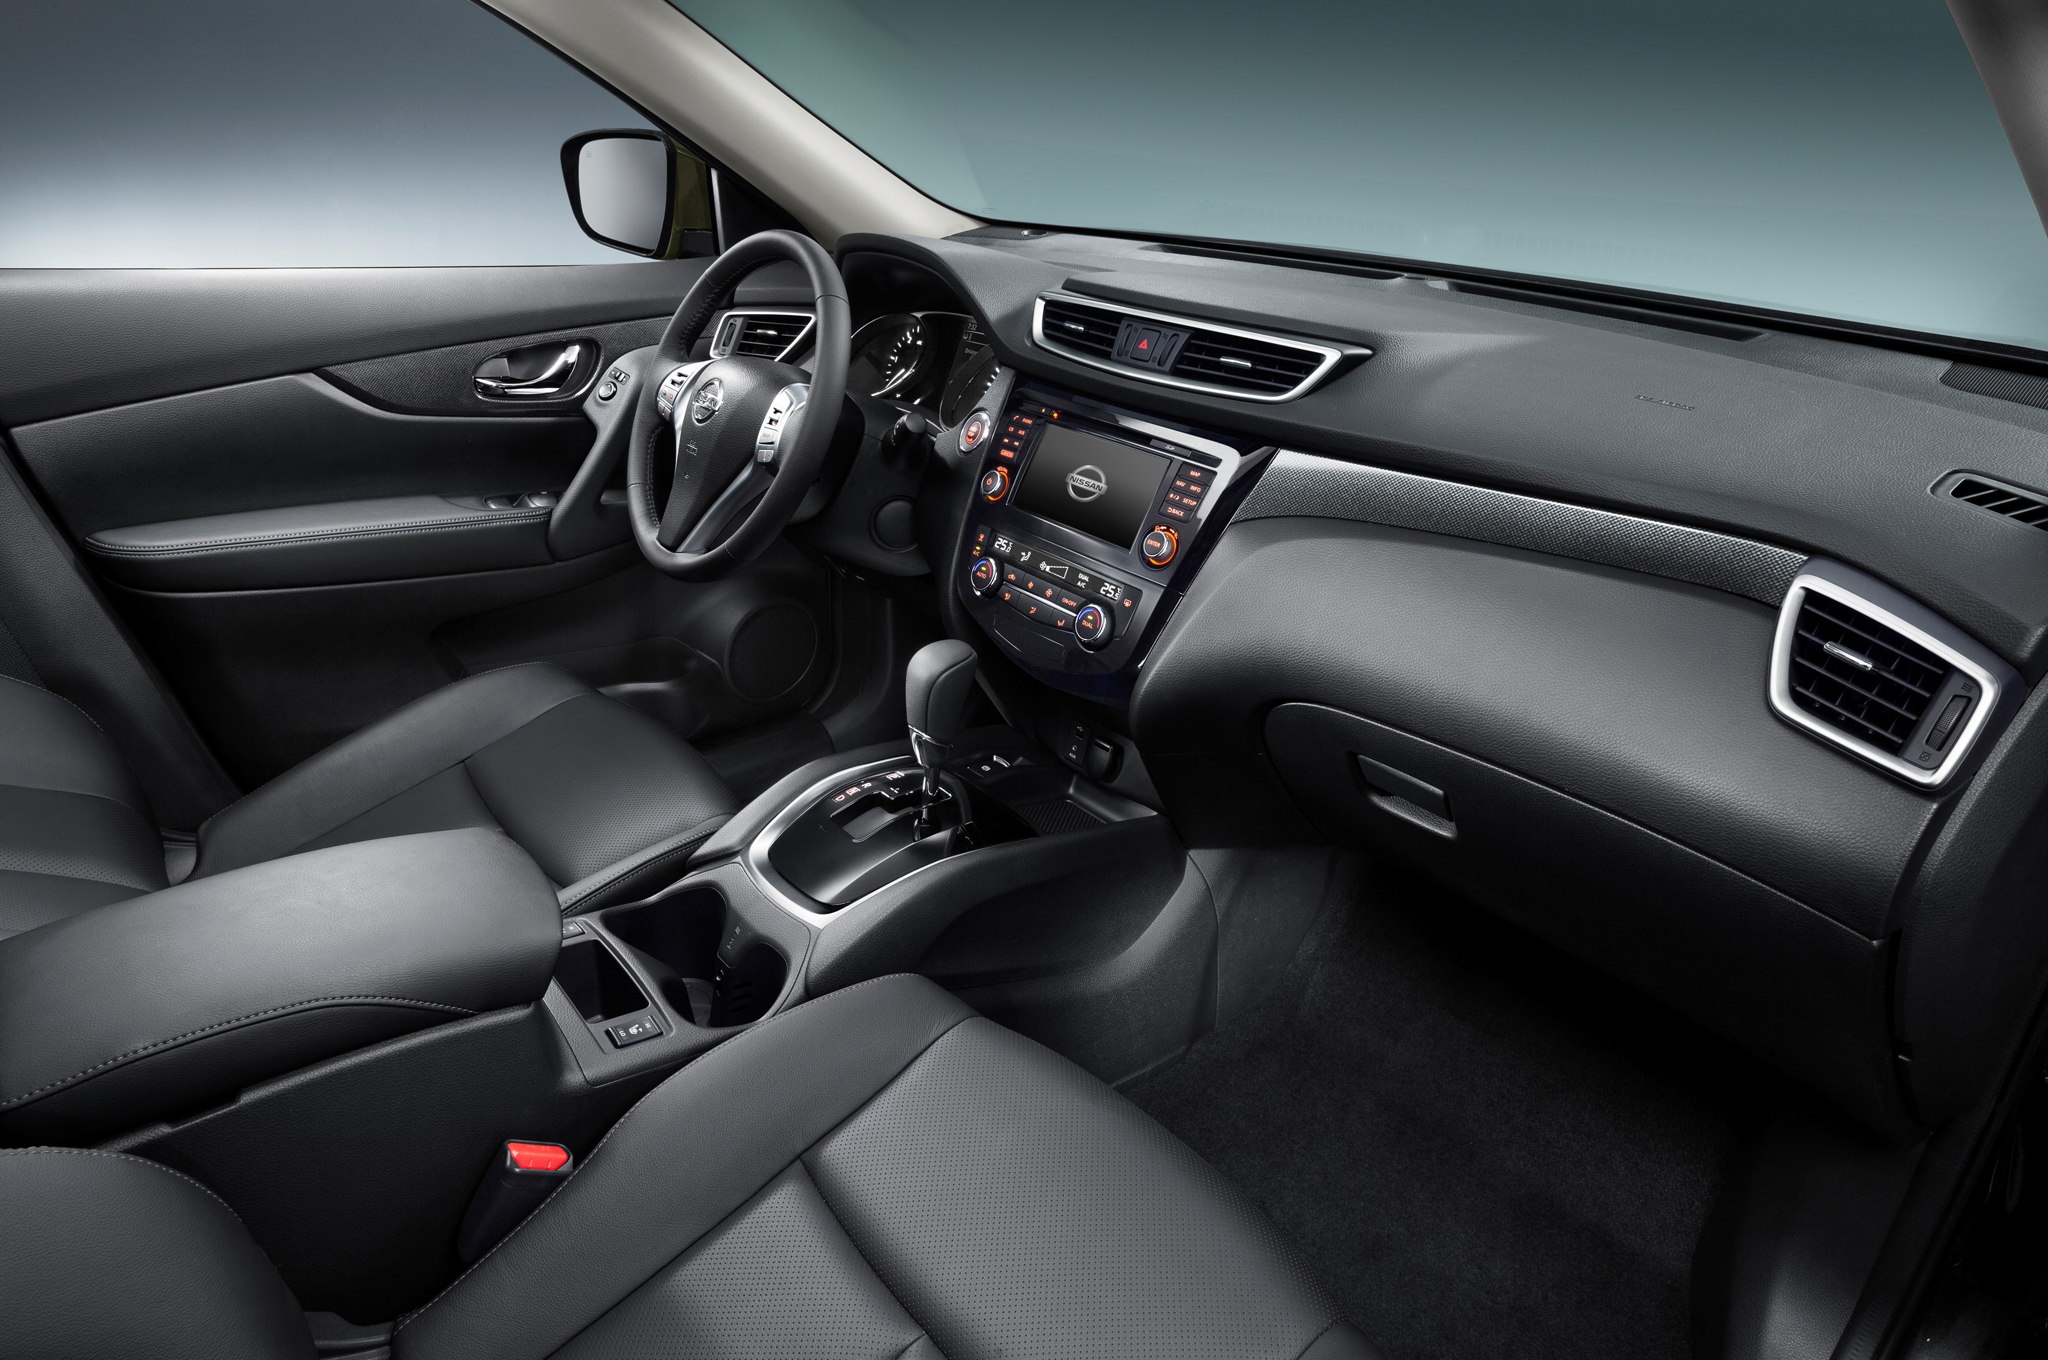 2014 Nissan Xterra Interior Dashboard View